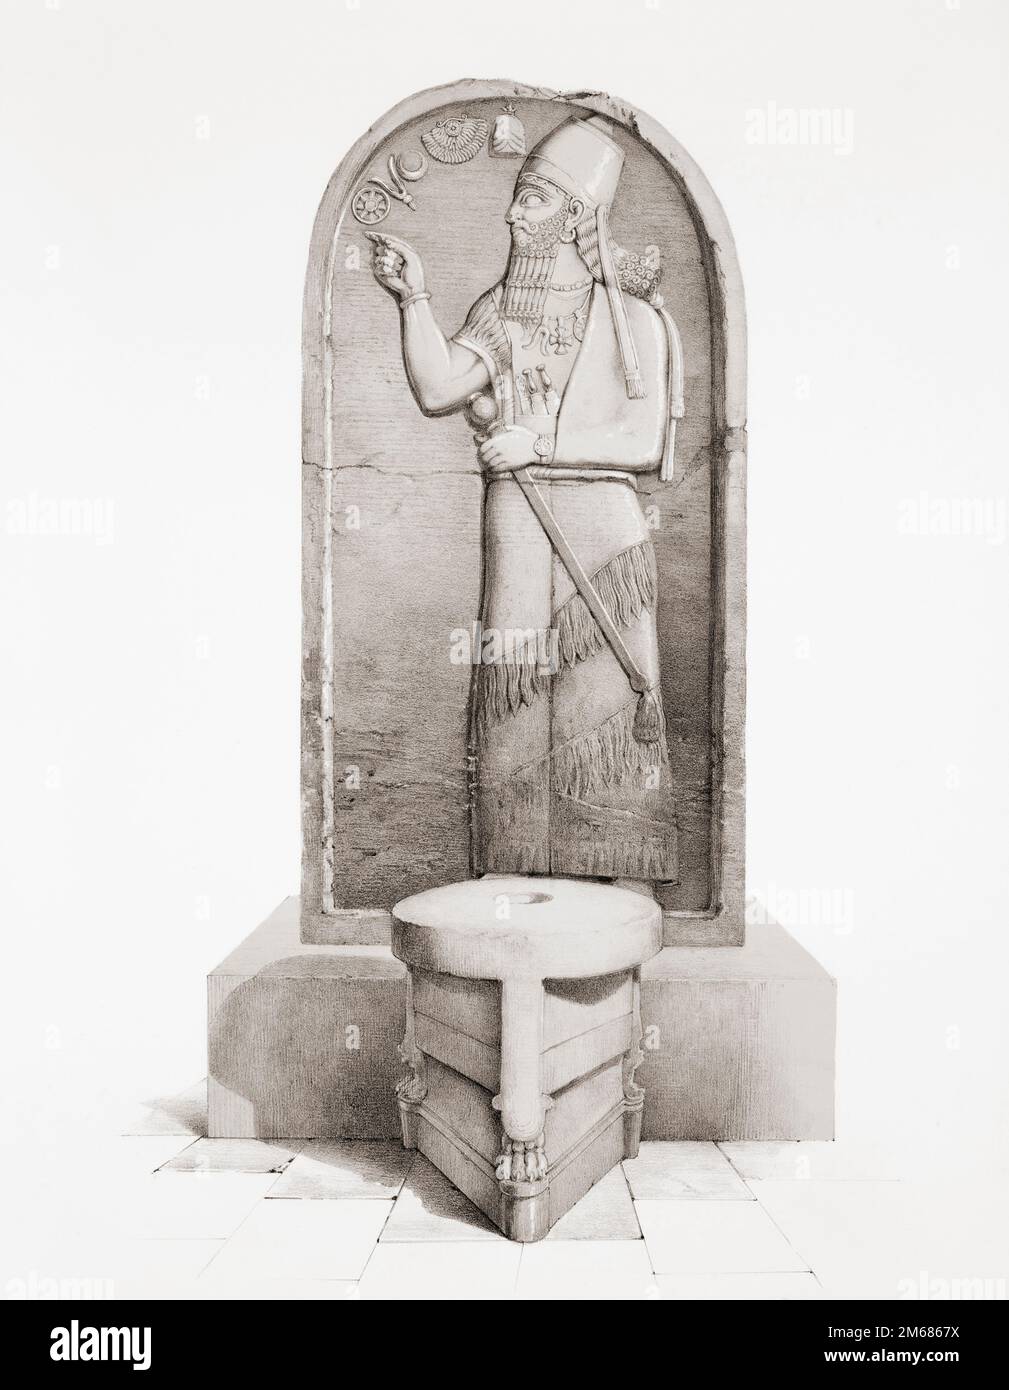 La Stela de Shamshi-Adad V derrière un autel sacrificiel de Nimrud, l'Assyrie antique, l'Irak moderne. Shamshi-Adad V était roi d'Assyrie de 824 à 811 av. J.-C., l'année de sa mort. La stela en grès de près de 2 mètres de haut est maintenant dans le British Museum, Londres. Après un travail de 19th siècle par Sir Austen Henry Layard. Banque D'Images